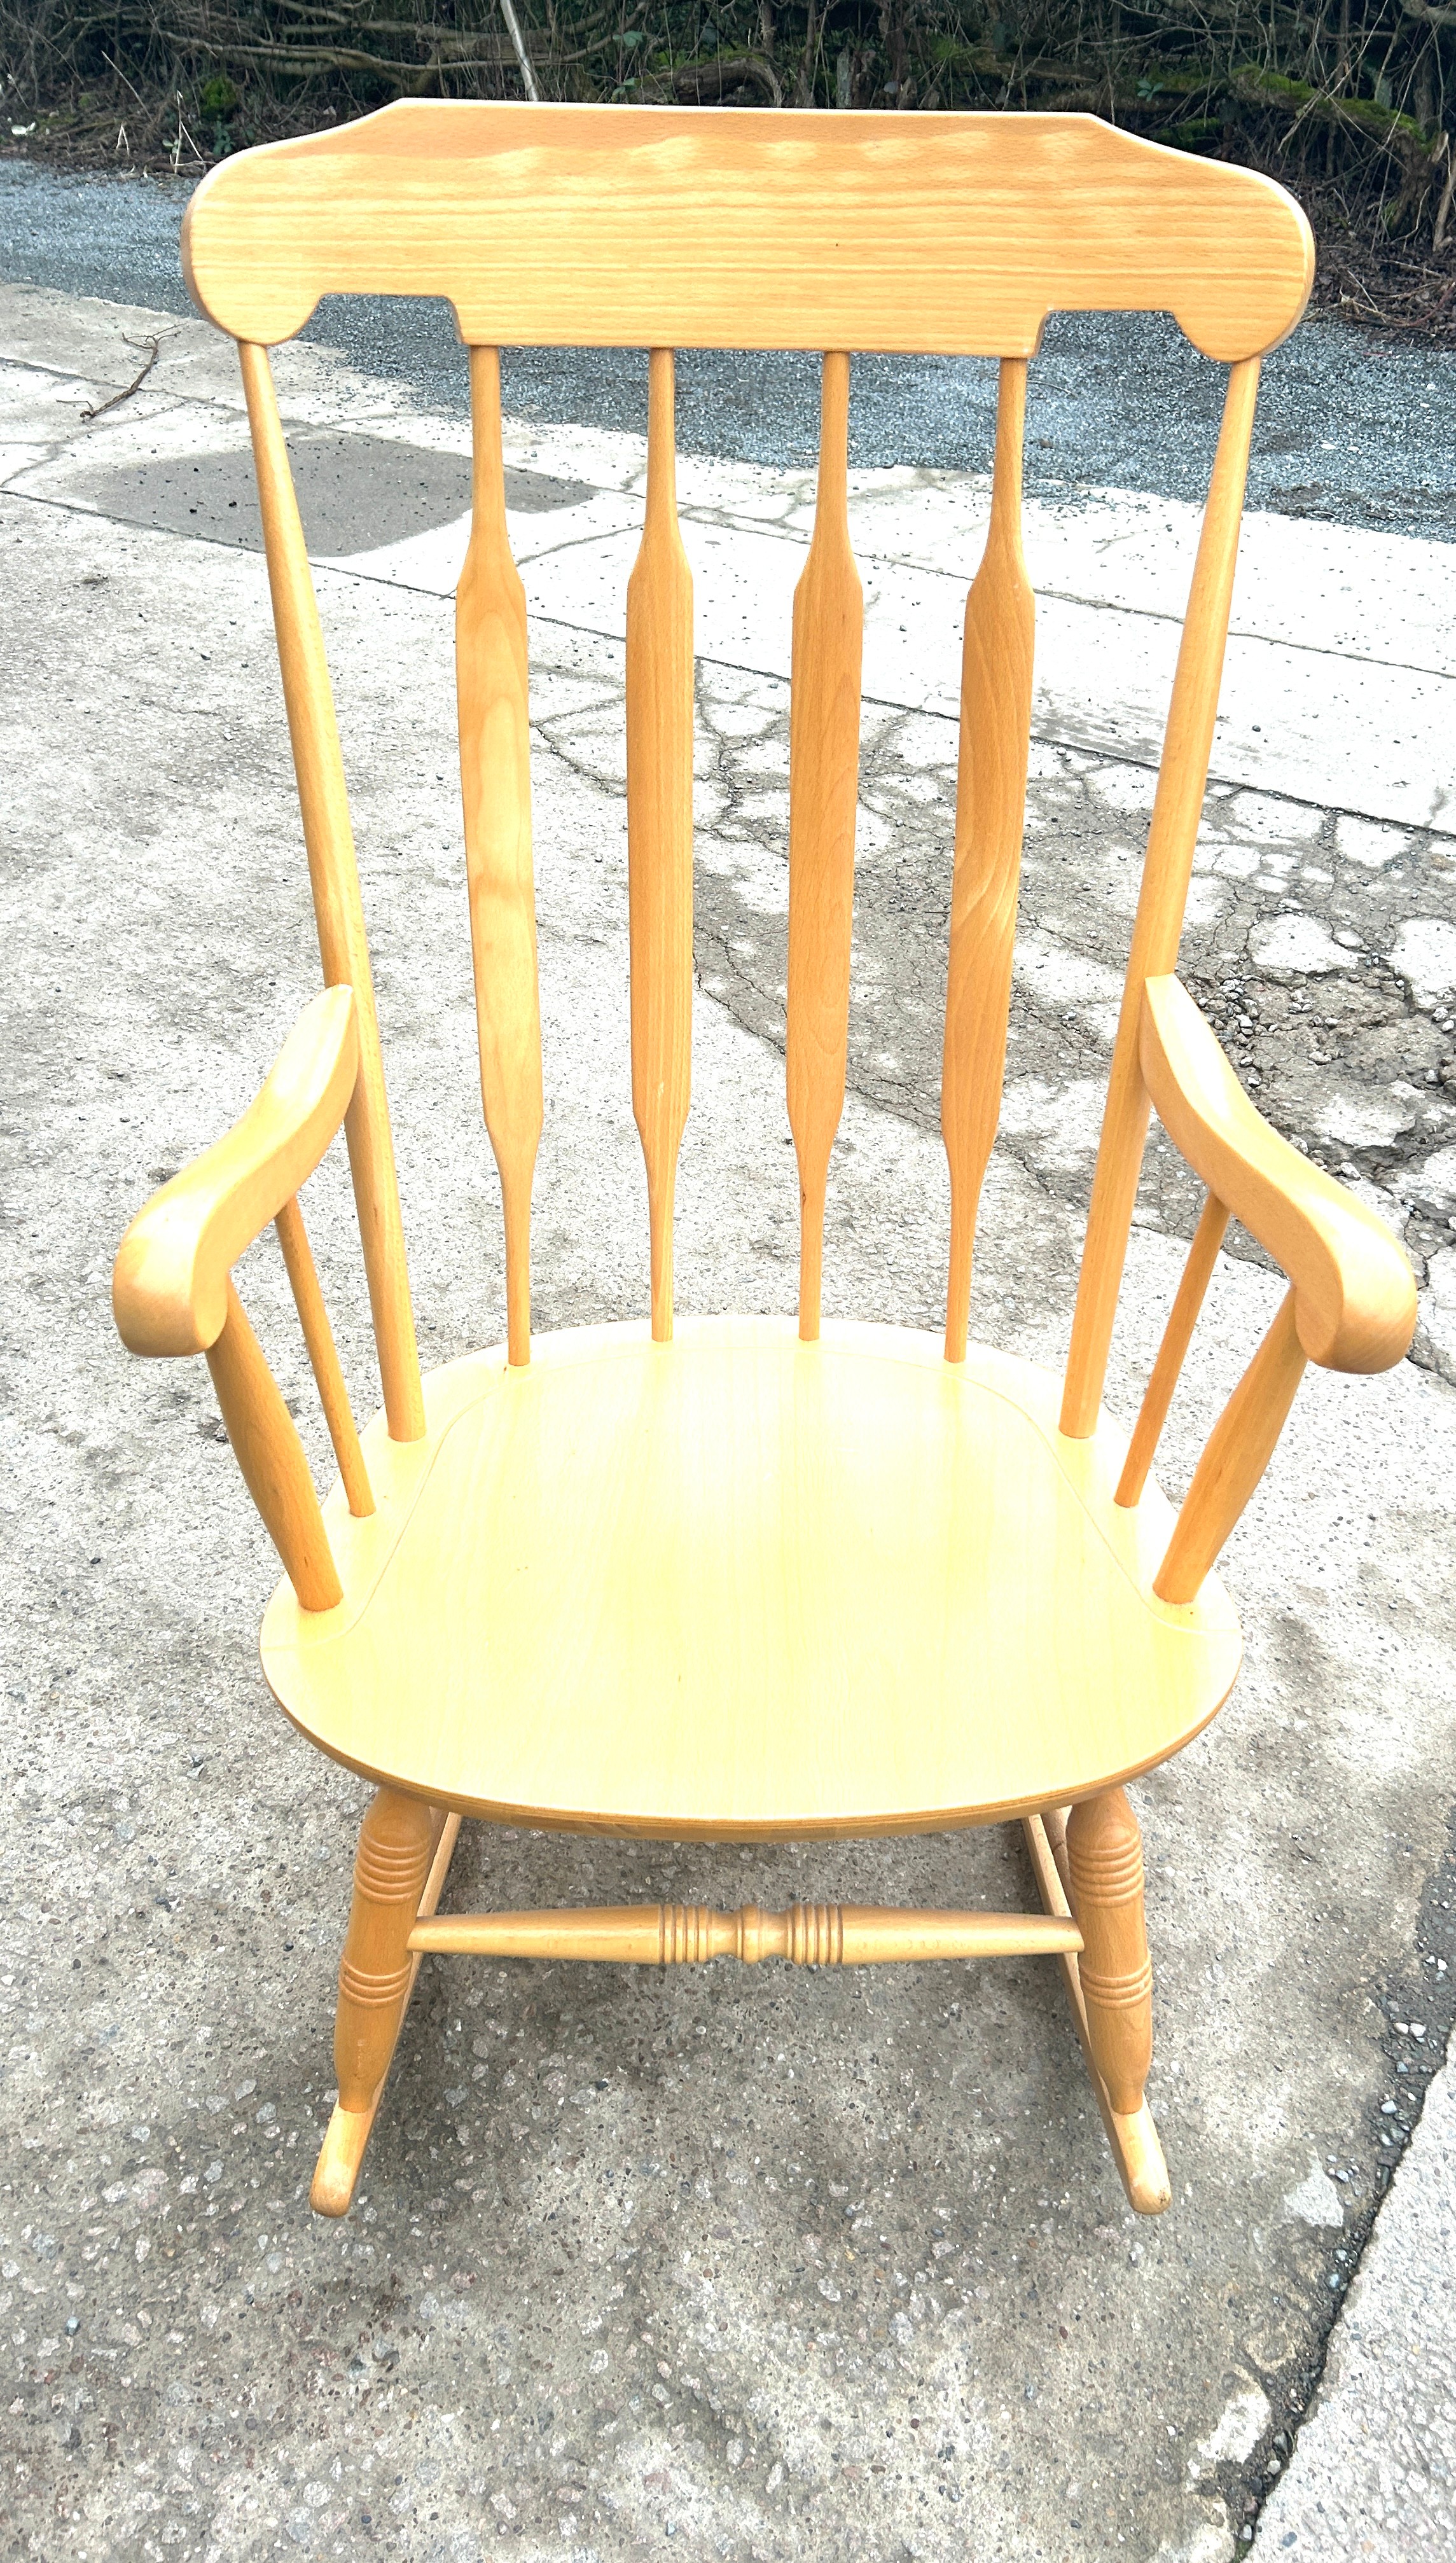 Teak Rocking chair - Image 2 of 3